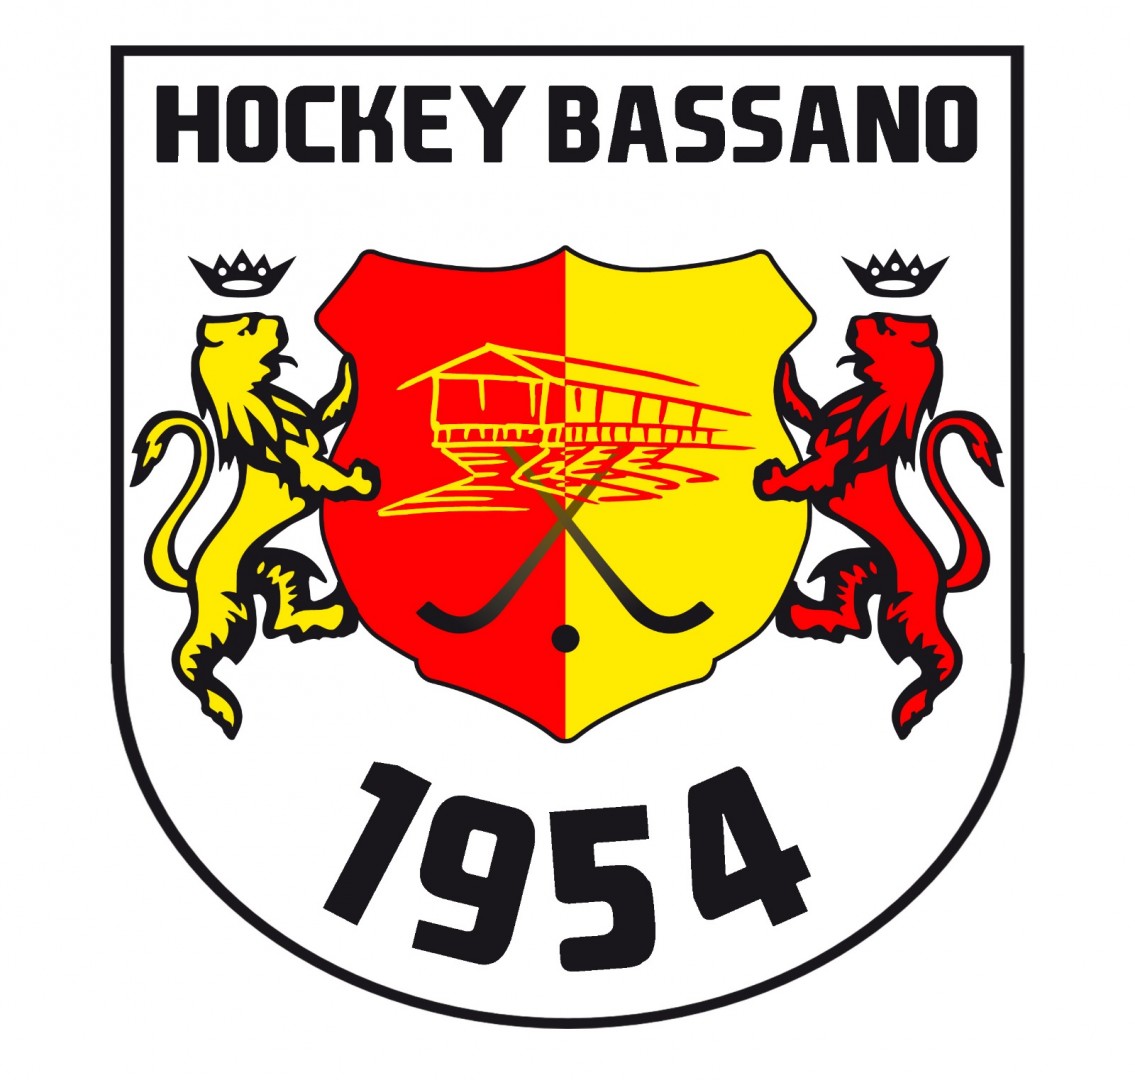 Hockey Bassano